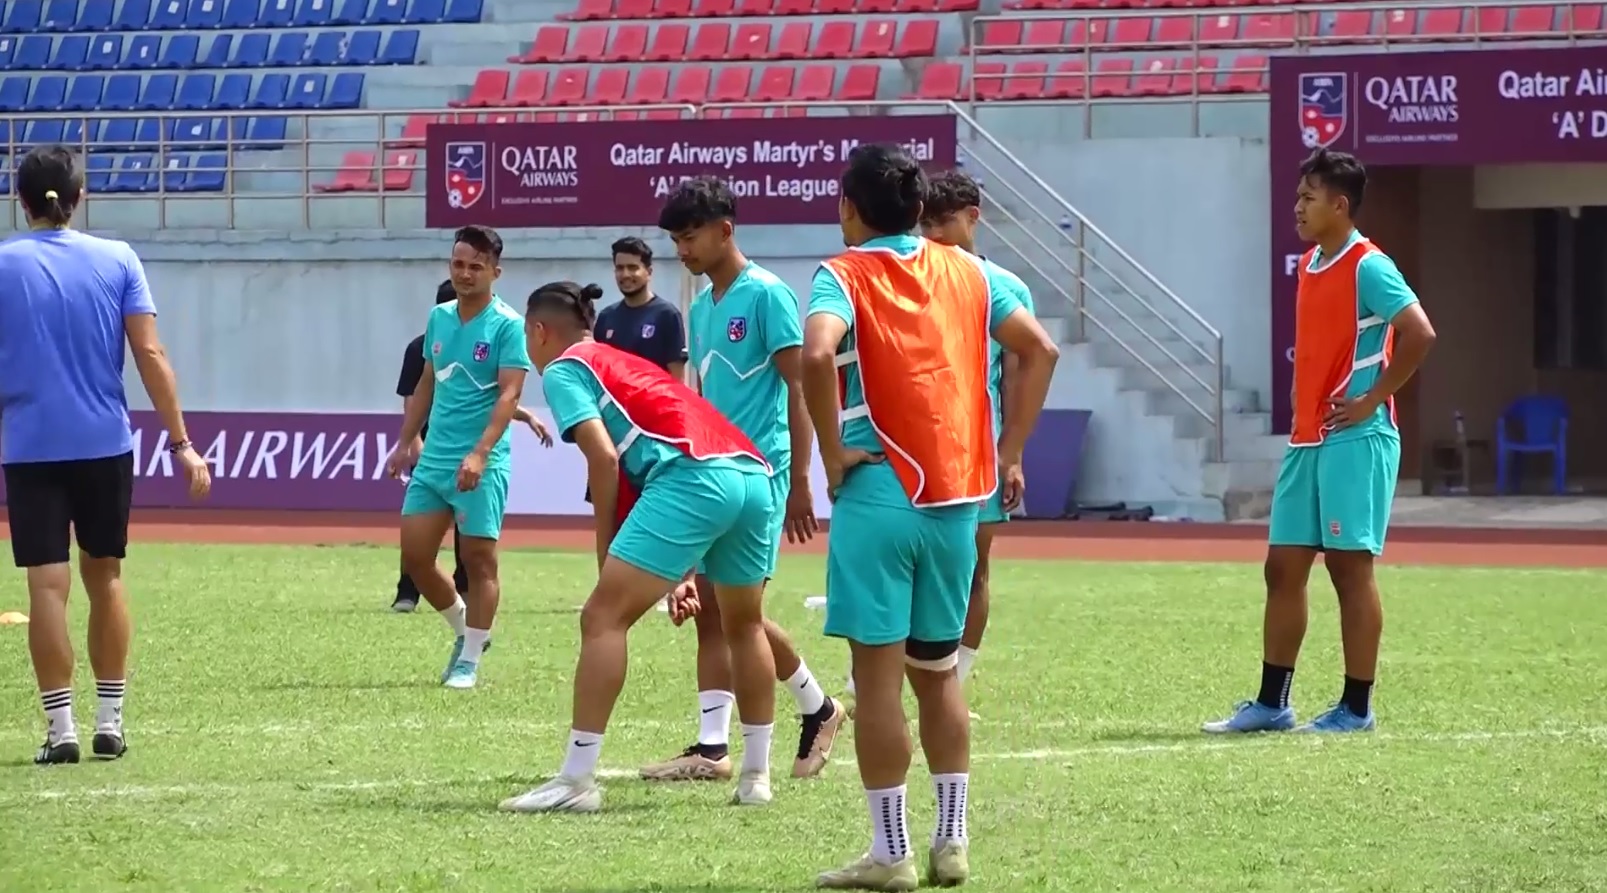 म्यानमारसँग हुने मैत्रीपूर्ण खेलका लागि नेपाली फुटबल टोली घोषणा